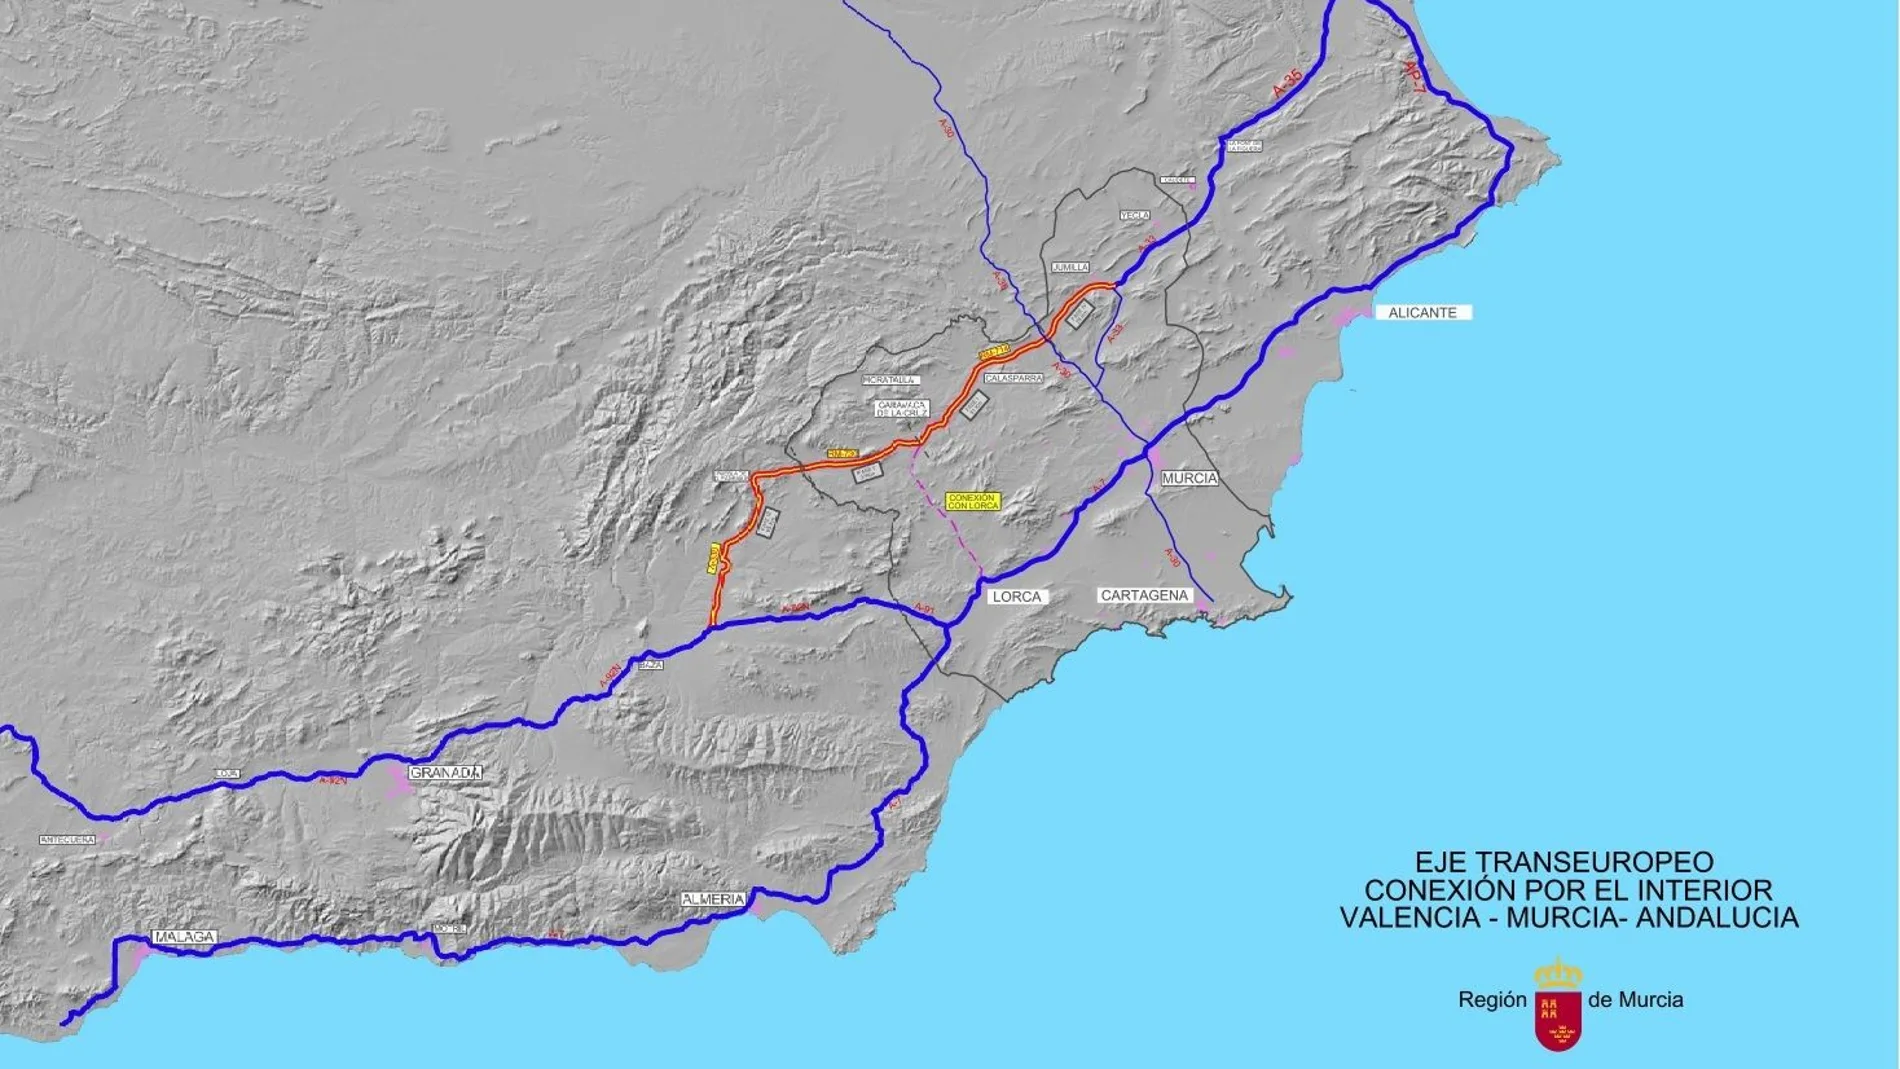 Supondrá la construcción de 181 nuevos kilómetros de red viaria, 116 de los cuales corresponde a la Región de Murcia y 65 al tramo correspondiente a Andalucía